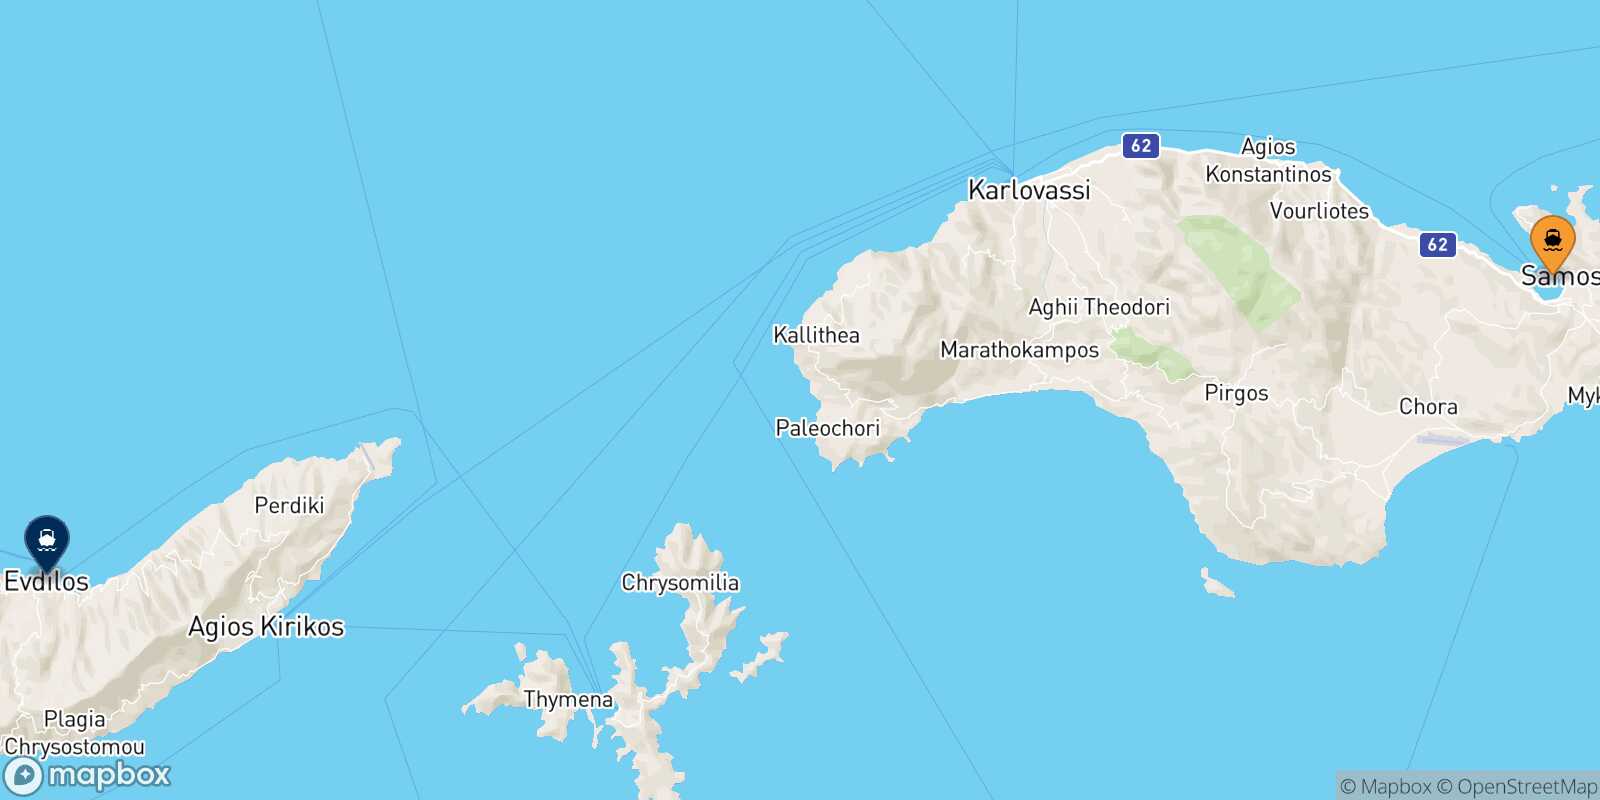 Vathi (Samos) Agios Kirikos (Ikaria) route map